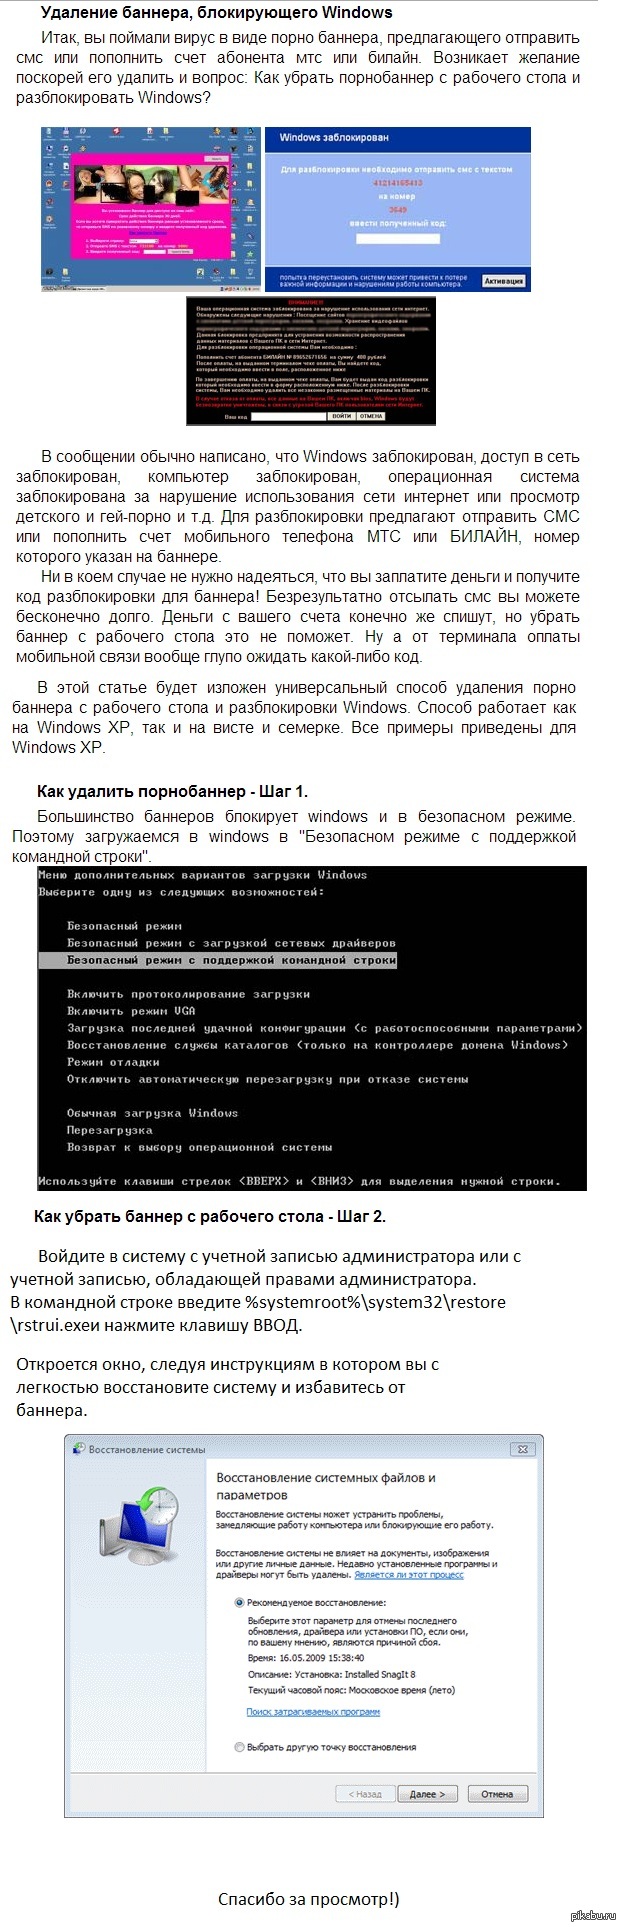 КЛУБ ЛЕКСУС РОССИЯ :: Вирус-блокиратор Windows (SMS-баннер)